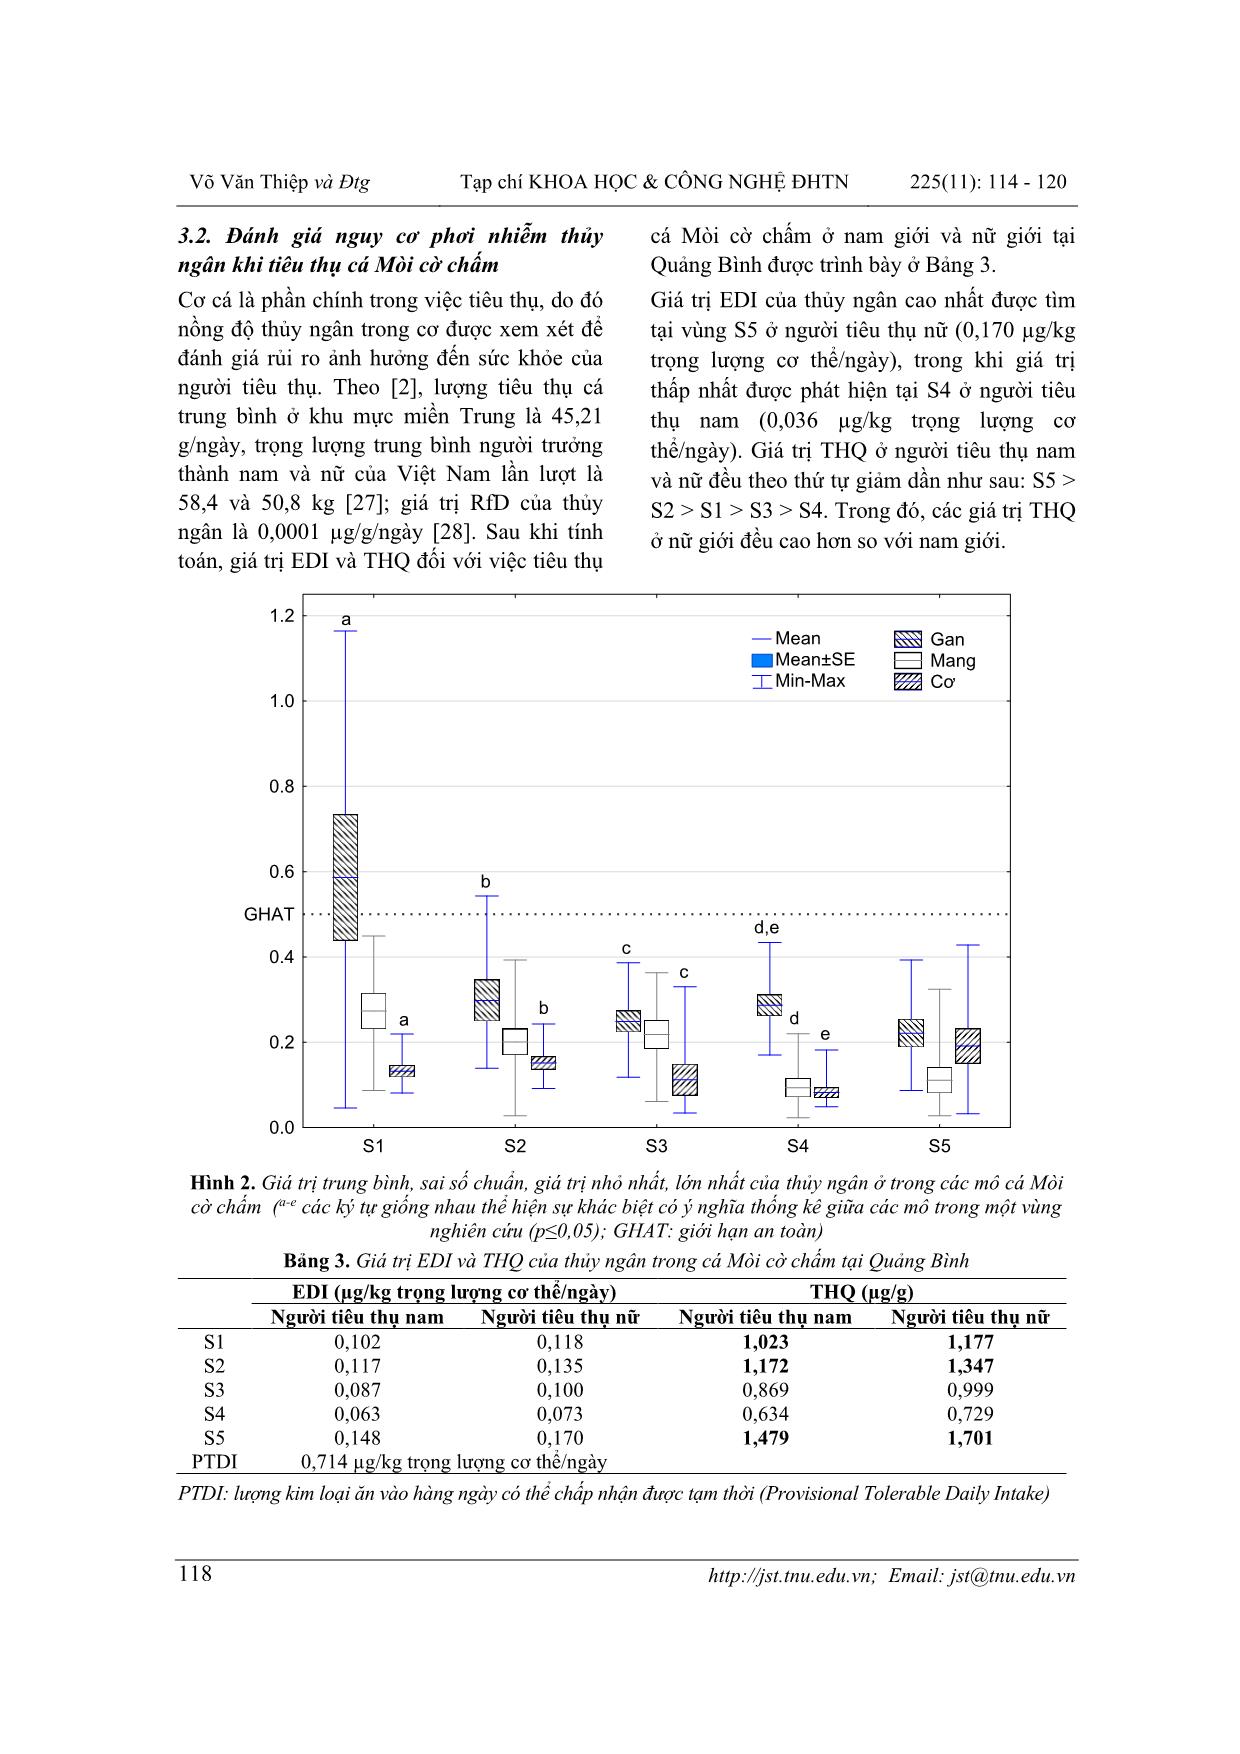 Đánh giá mức độ rủi ro của thủy ngân khi tiêu thụ cá mòi cờ chấm (Konosirus punctatus schlegel, 1846) ở tỉnh Quảng Bình trang 5